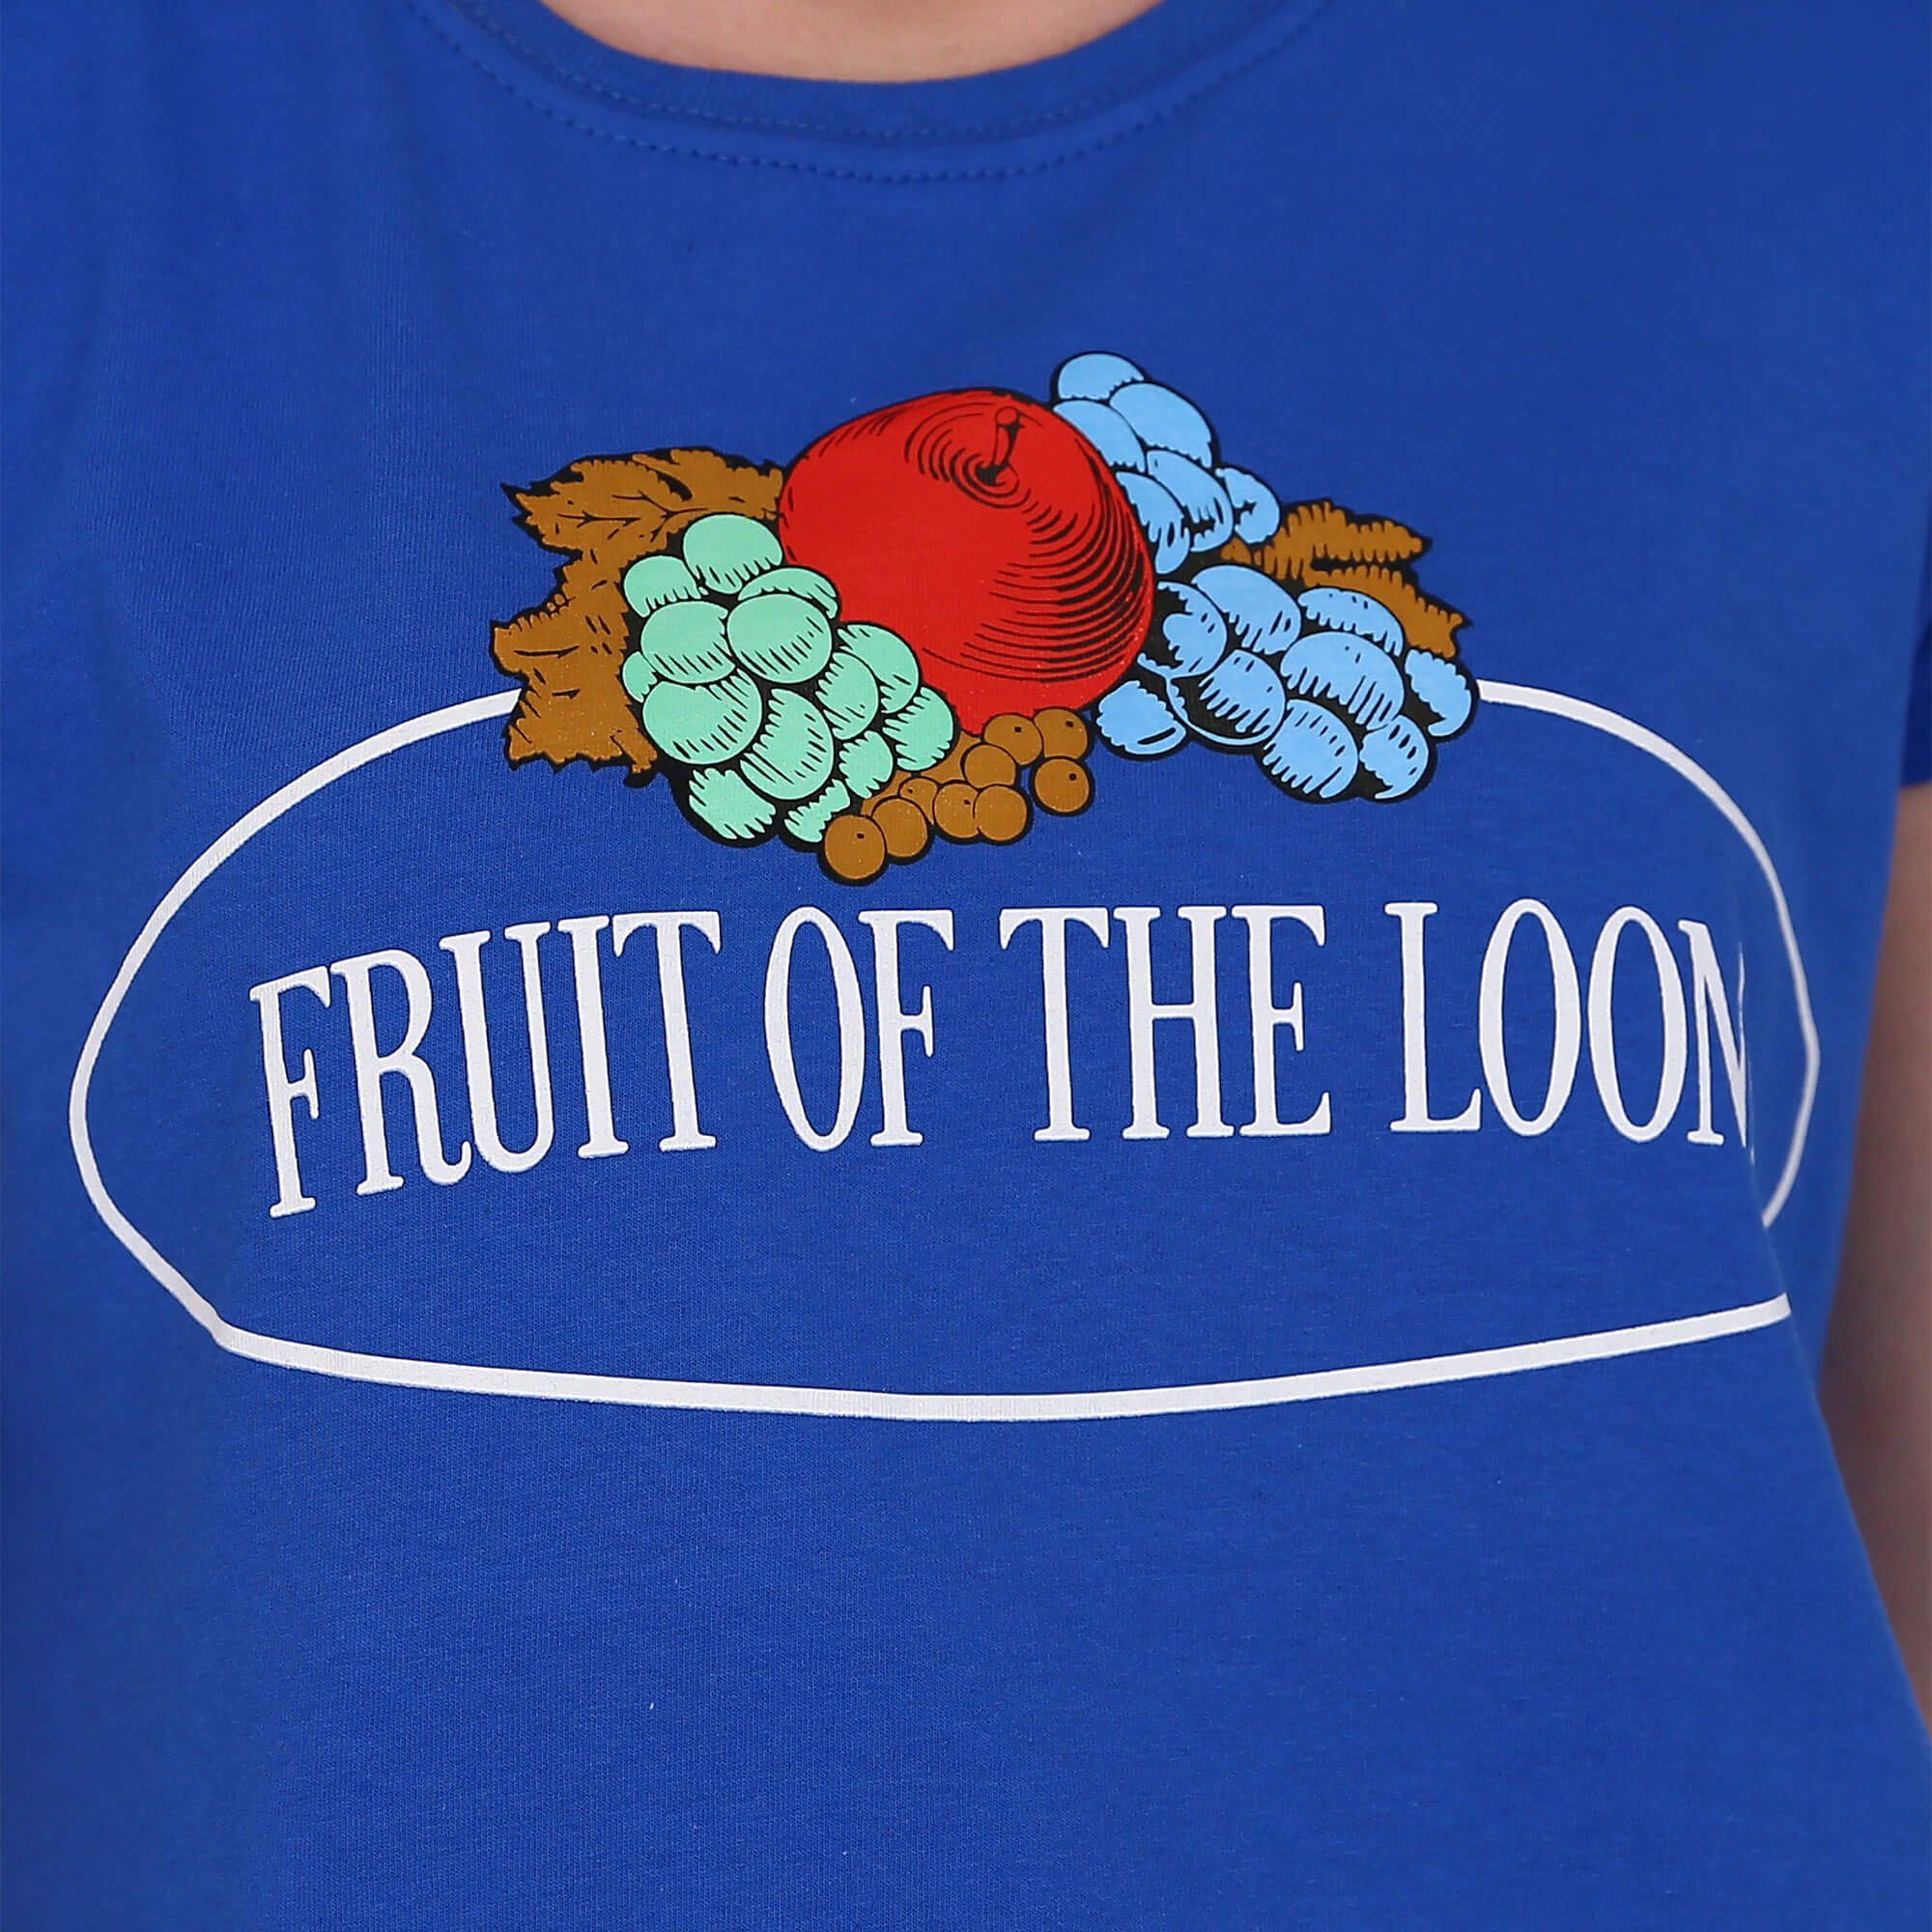 Vintage-Logo the Loom Sweatshirt Damen royal mit of leichtes Sweatshirt Fruit